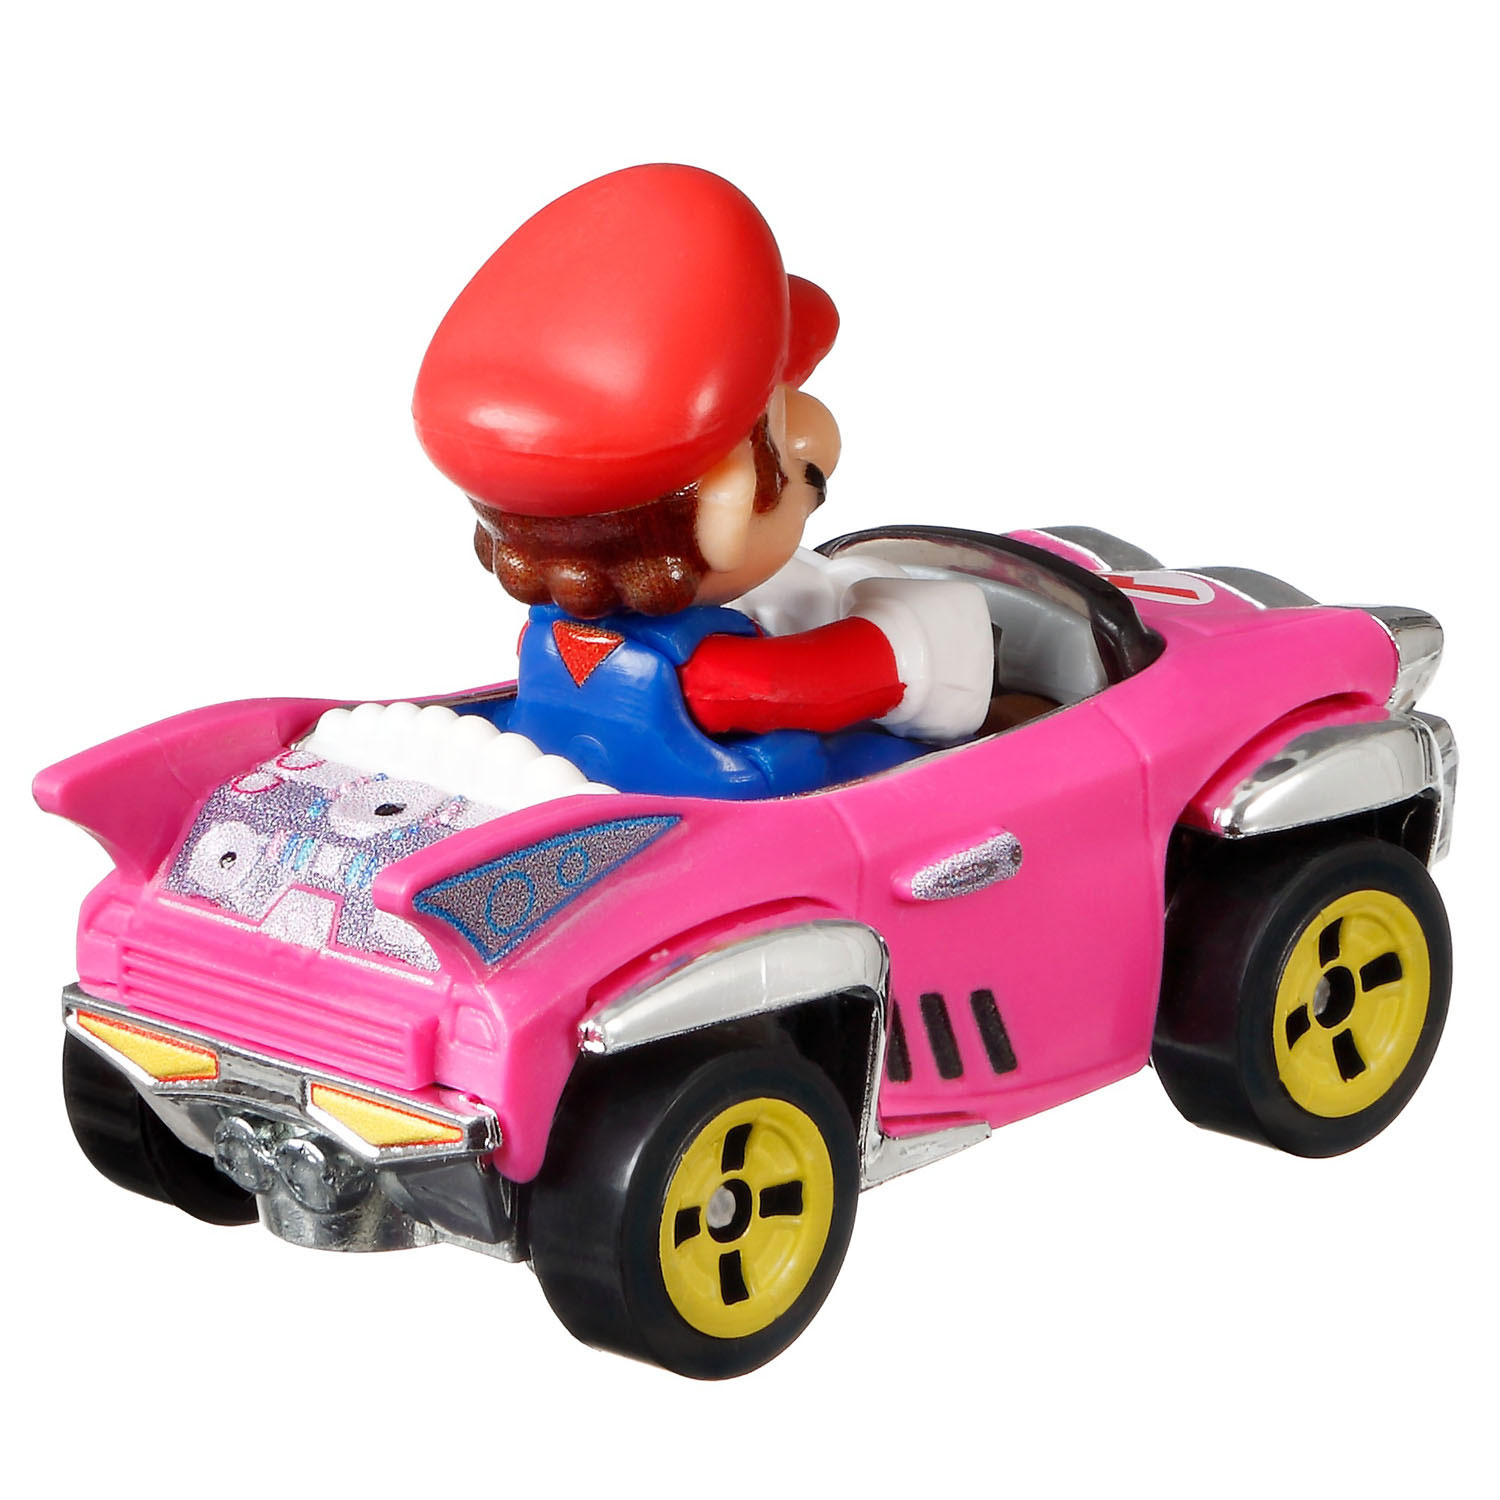 Hot Wheels Mario Kart Die-cast Auto - Set 1